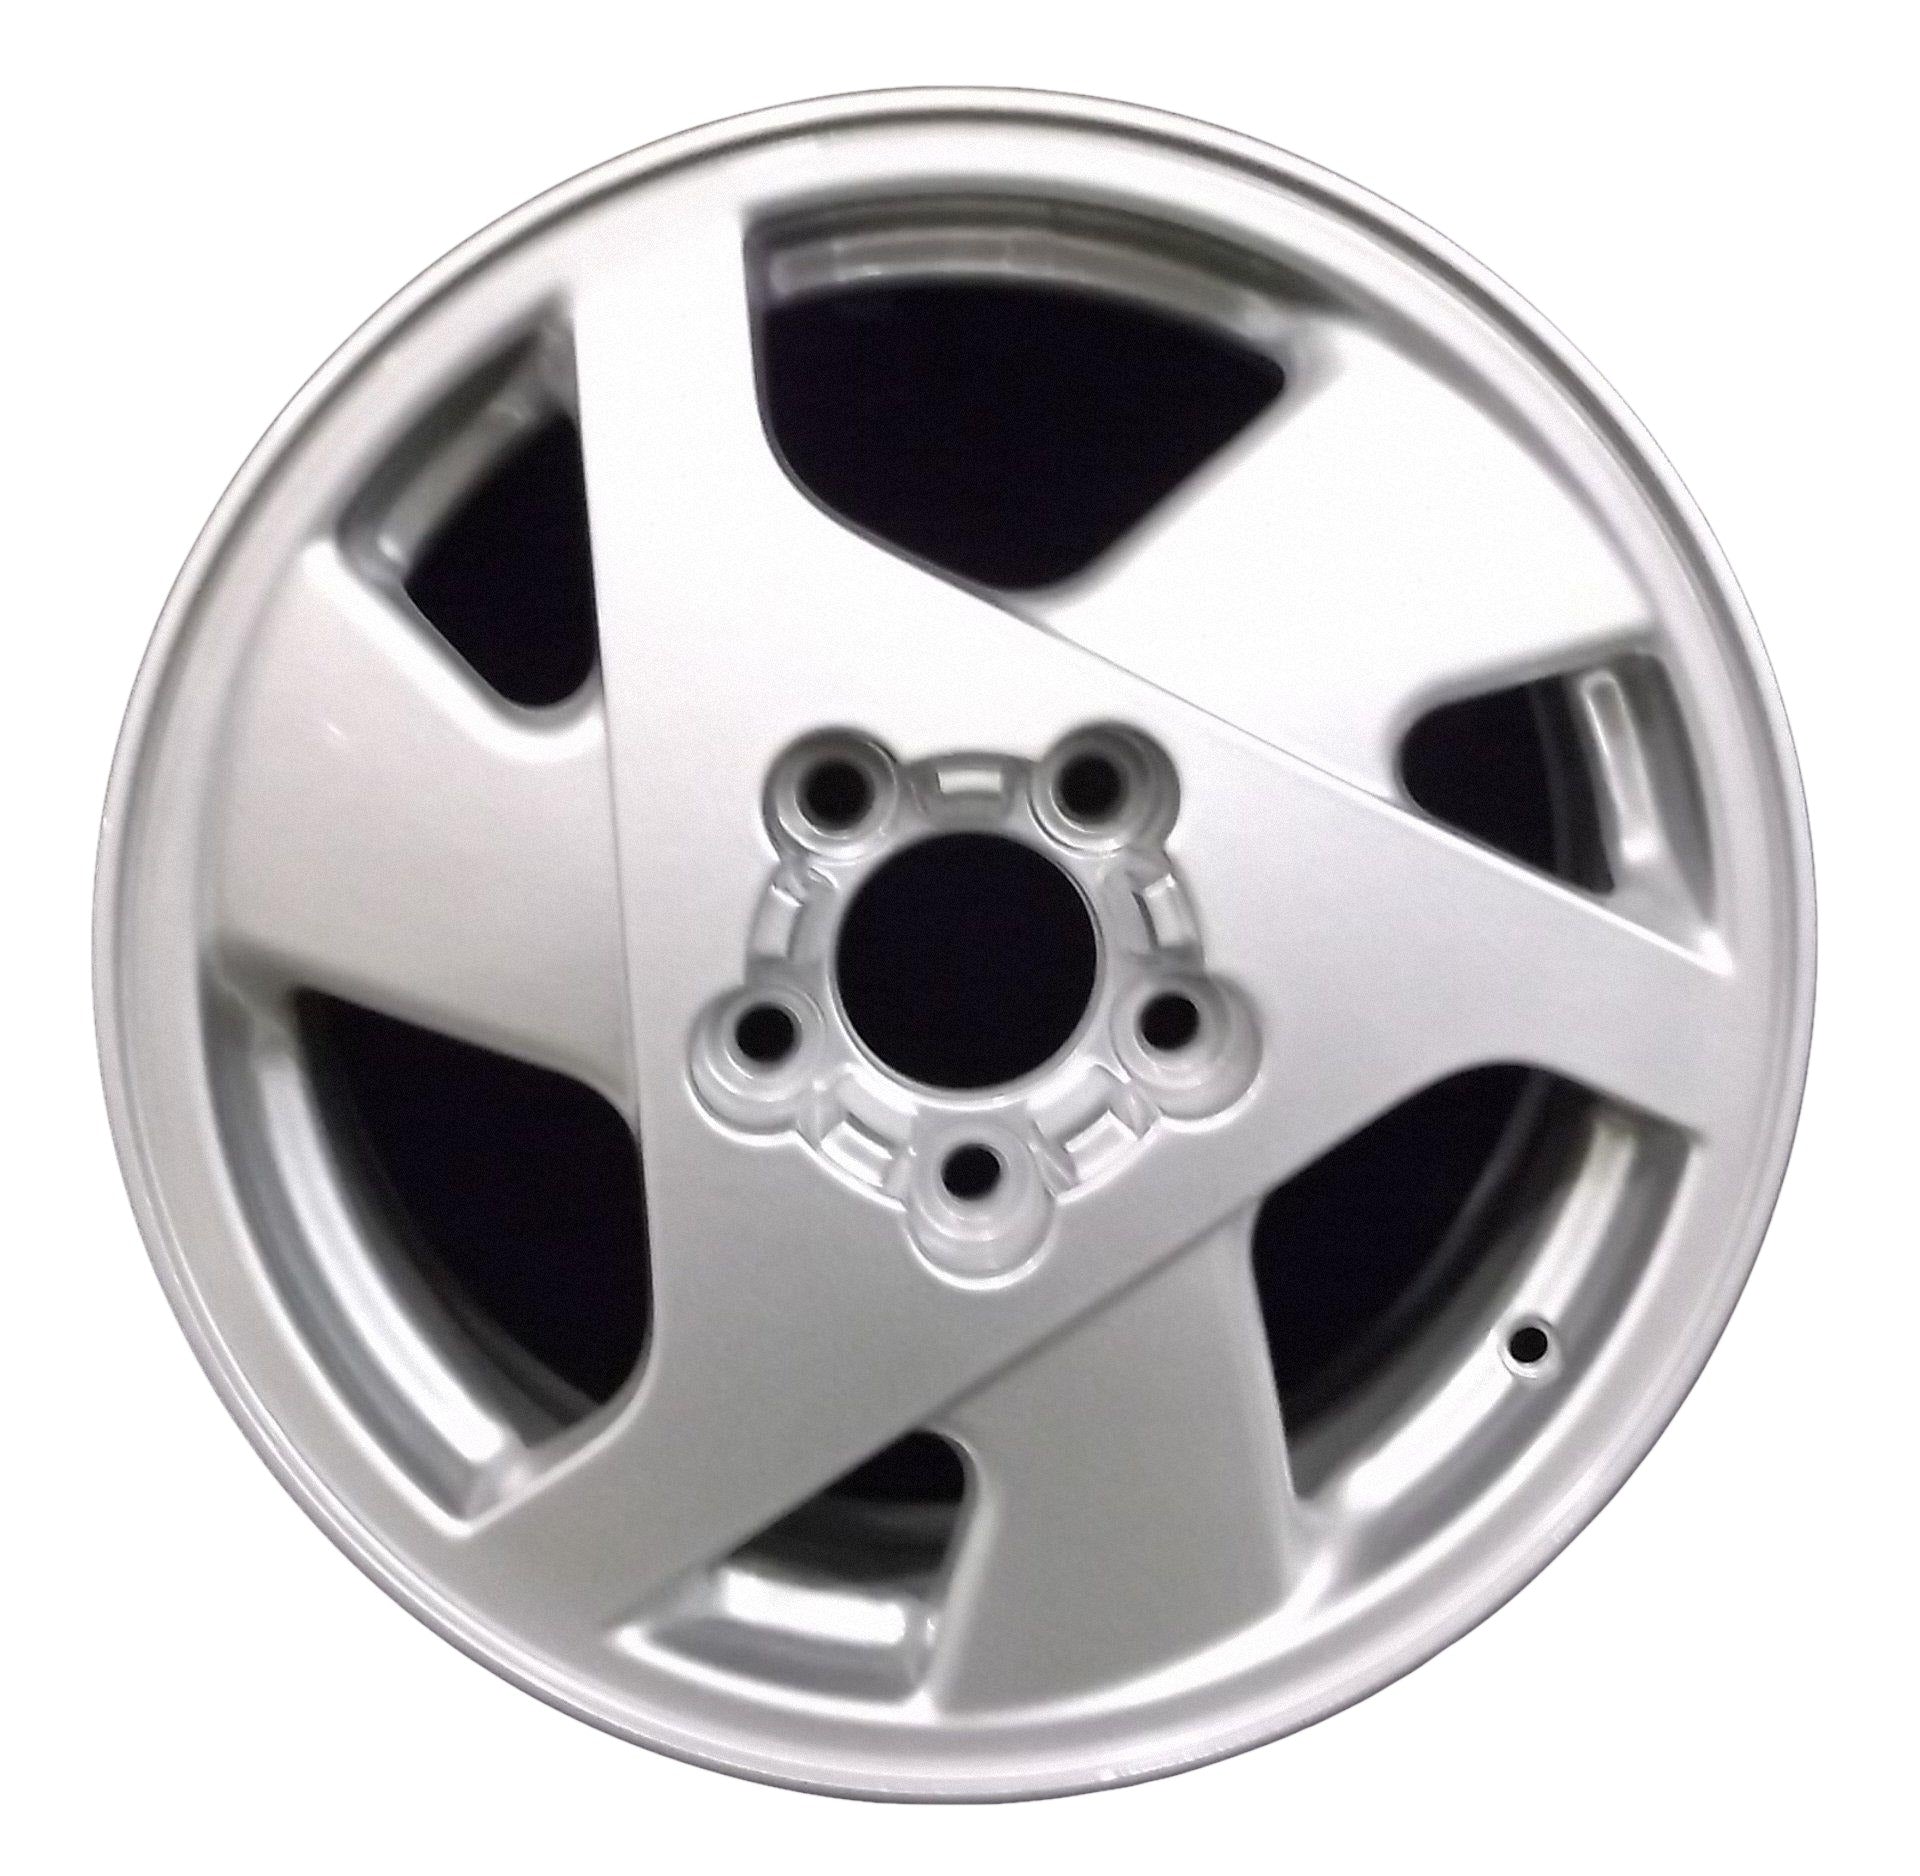 Pontiac Aztek  2001, 2002, 2003 Factory OEM Car Wheel Size 16x6.5 Alloy WAO.6546.PS13.FF